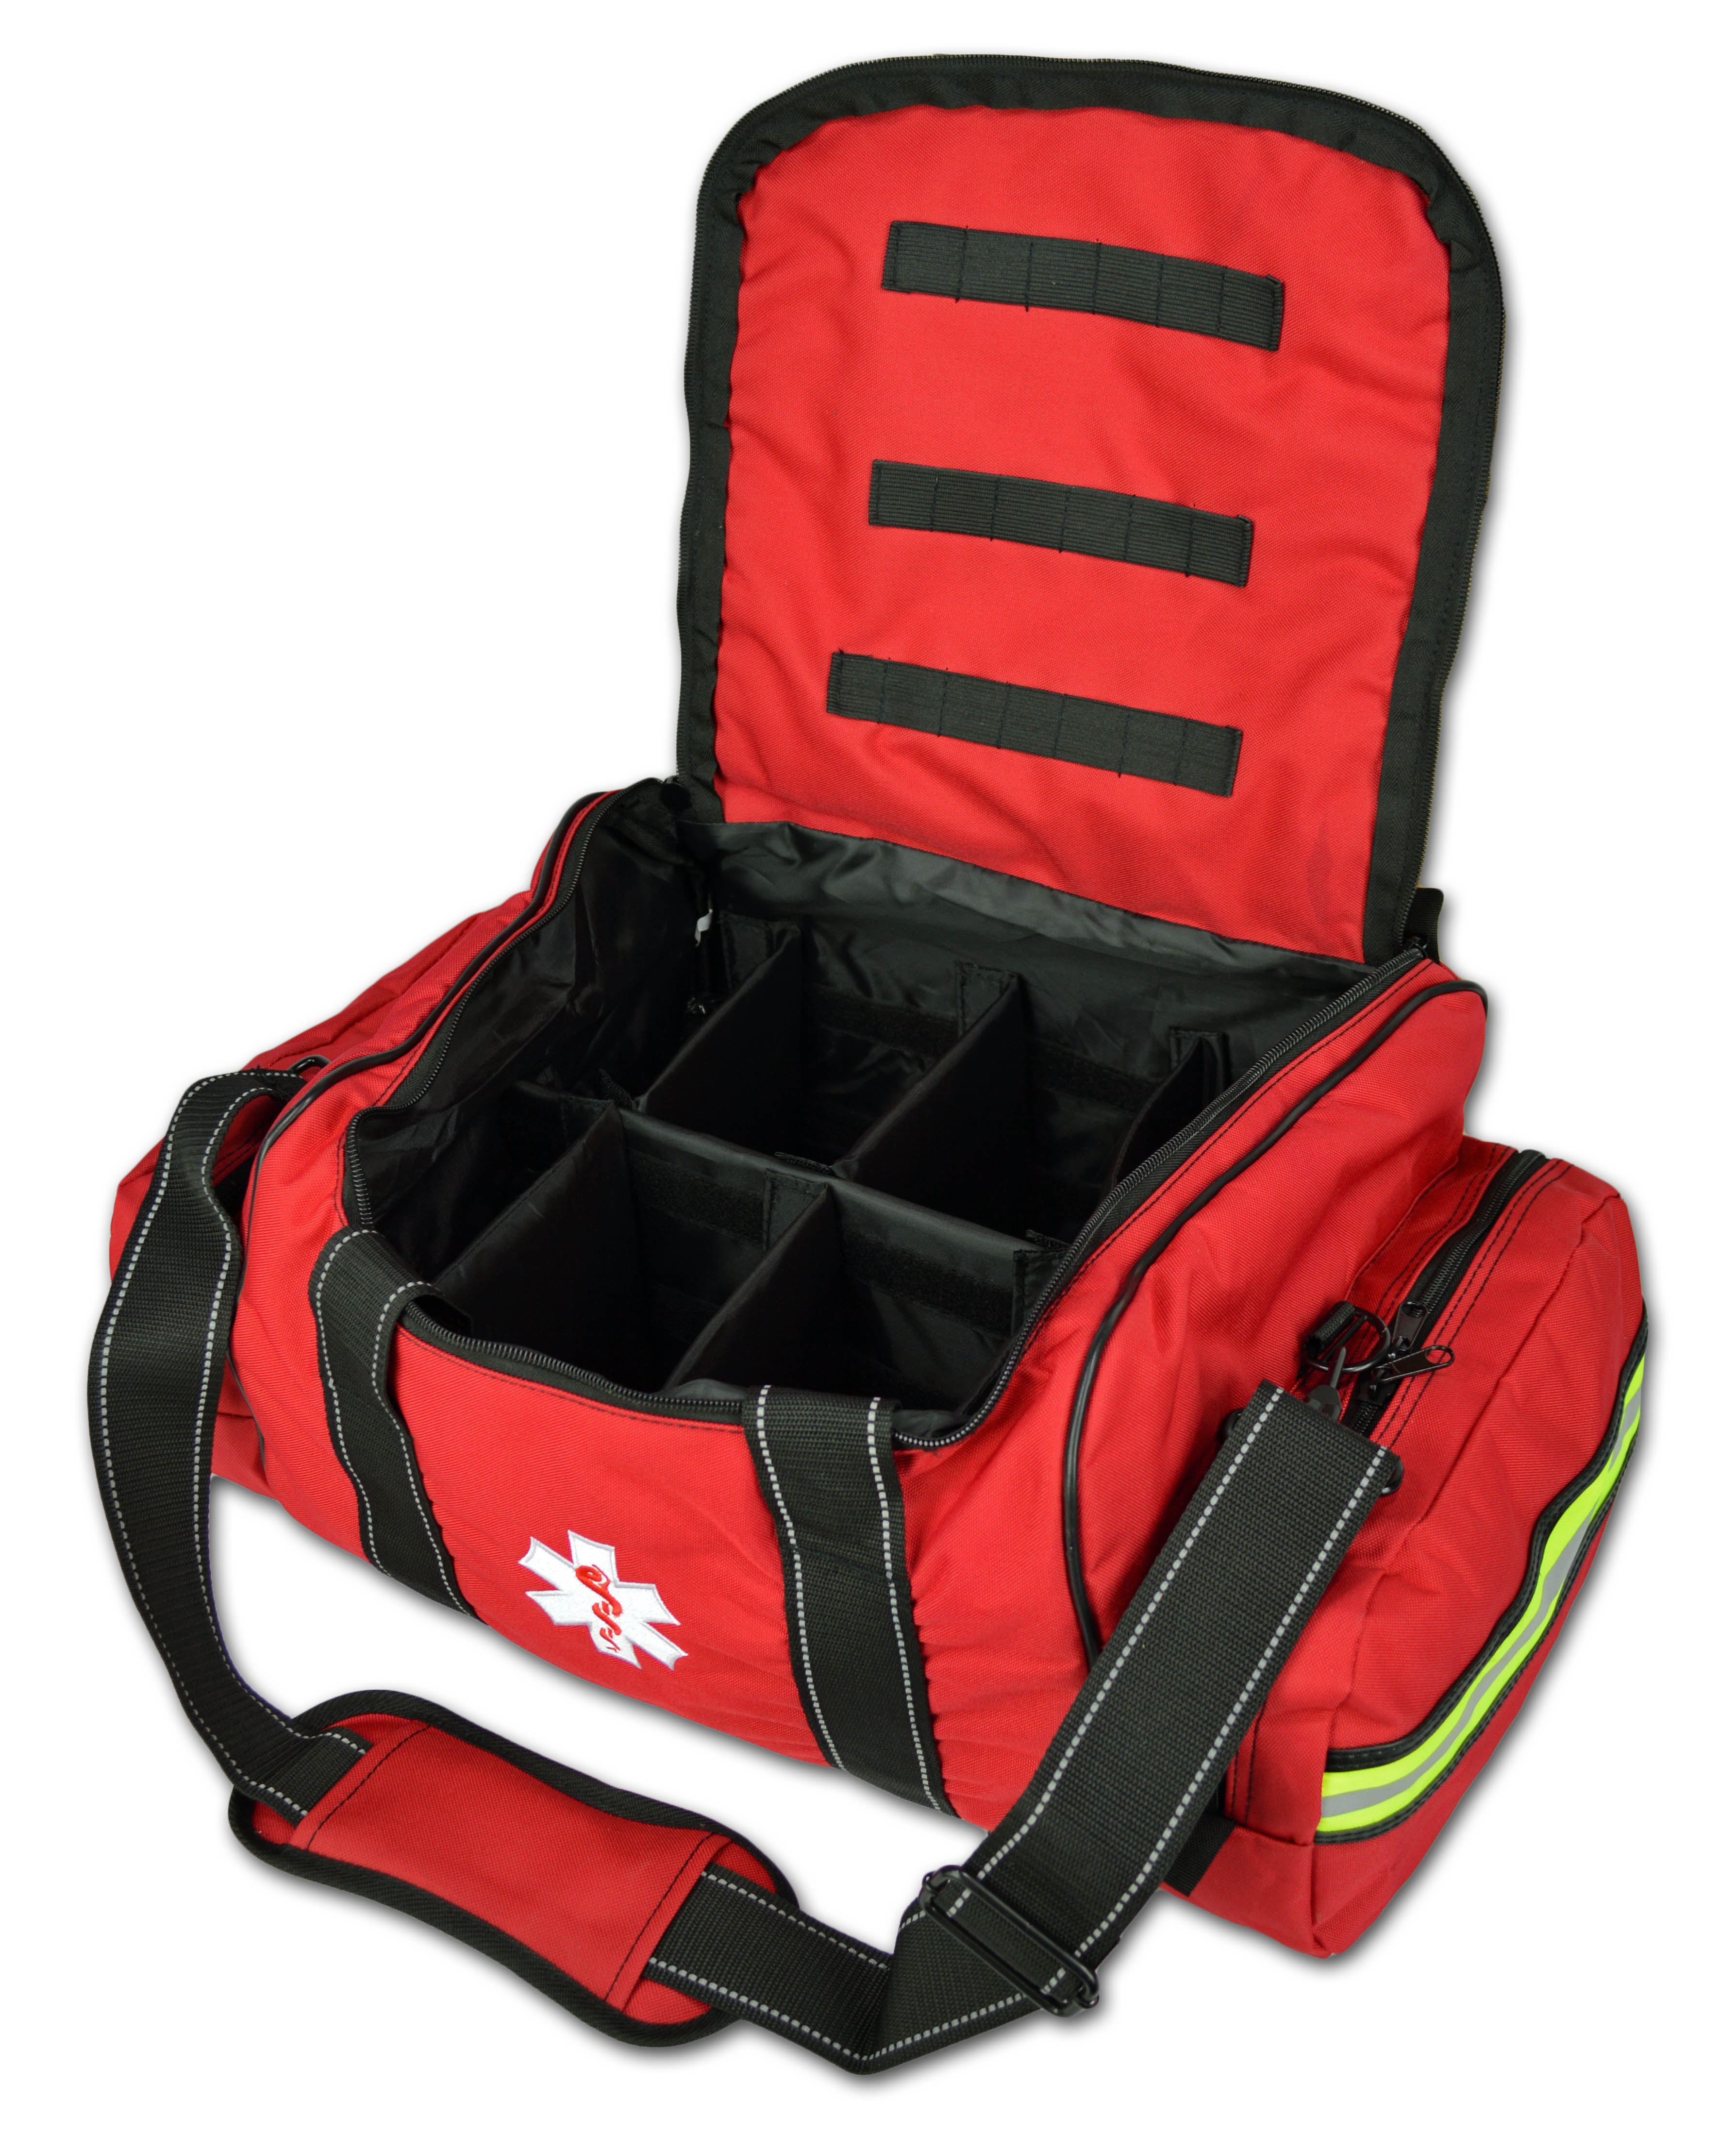 Lightning X Large EMT Medic First Responder EMS Trauma Jump Bag w/ Dividers - image 2 of 2